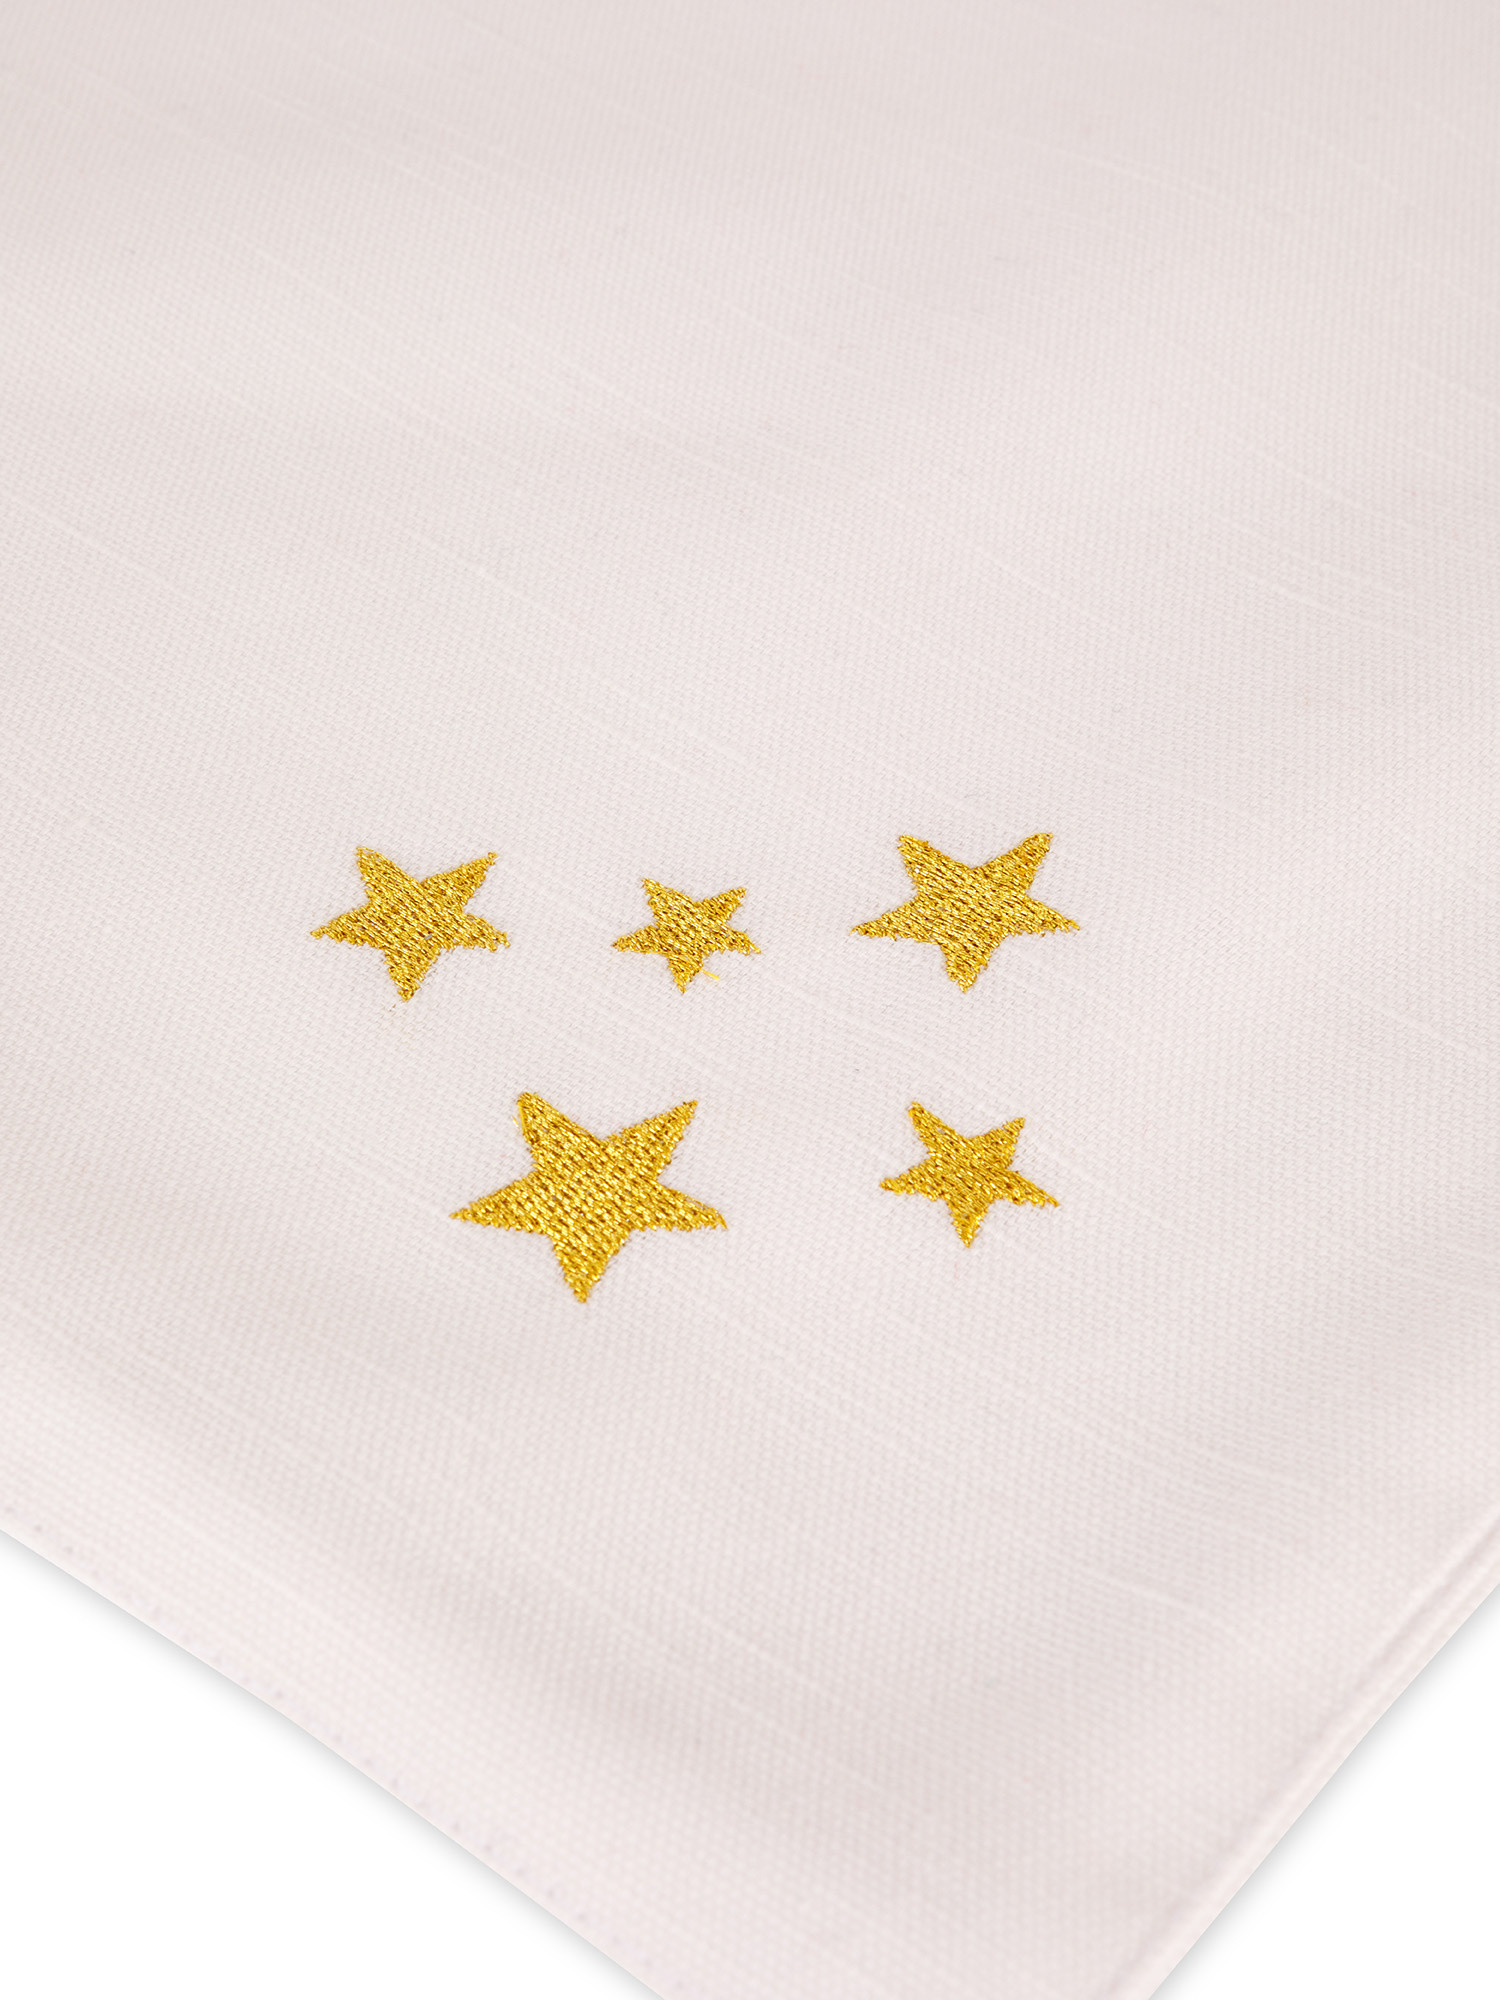 Tovaglietta cotone ricamo stelle, Oro, large image number 1